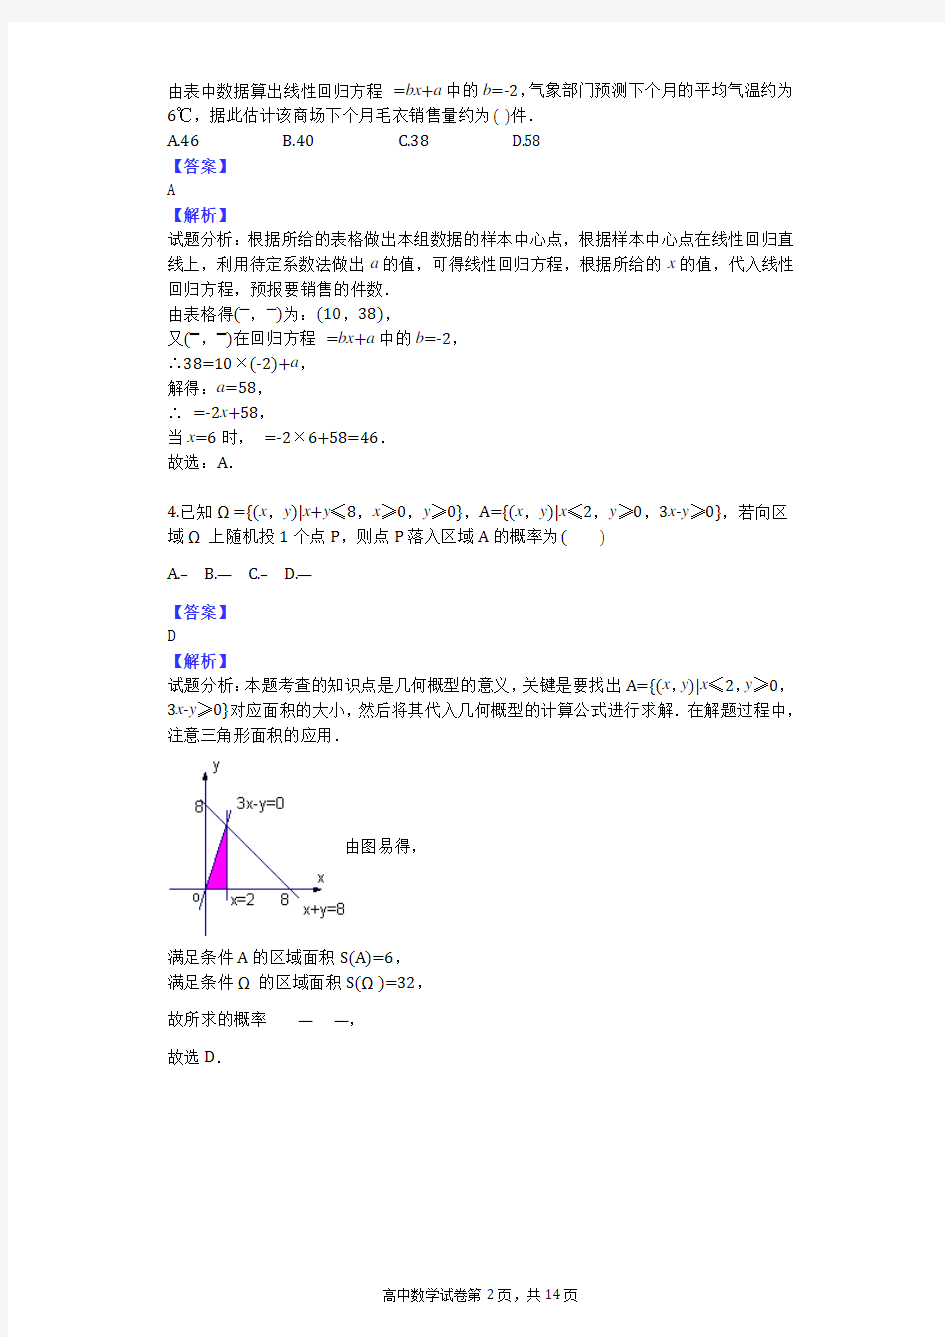 2014年江西省十校高考数学一模试卷(文科)